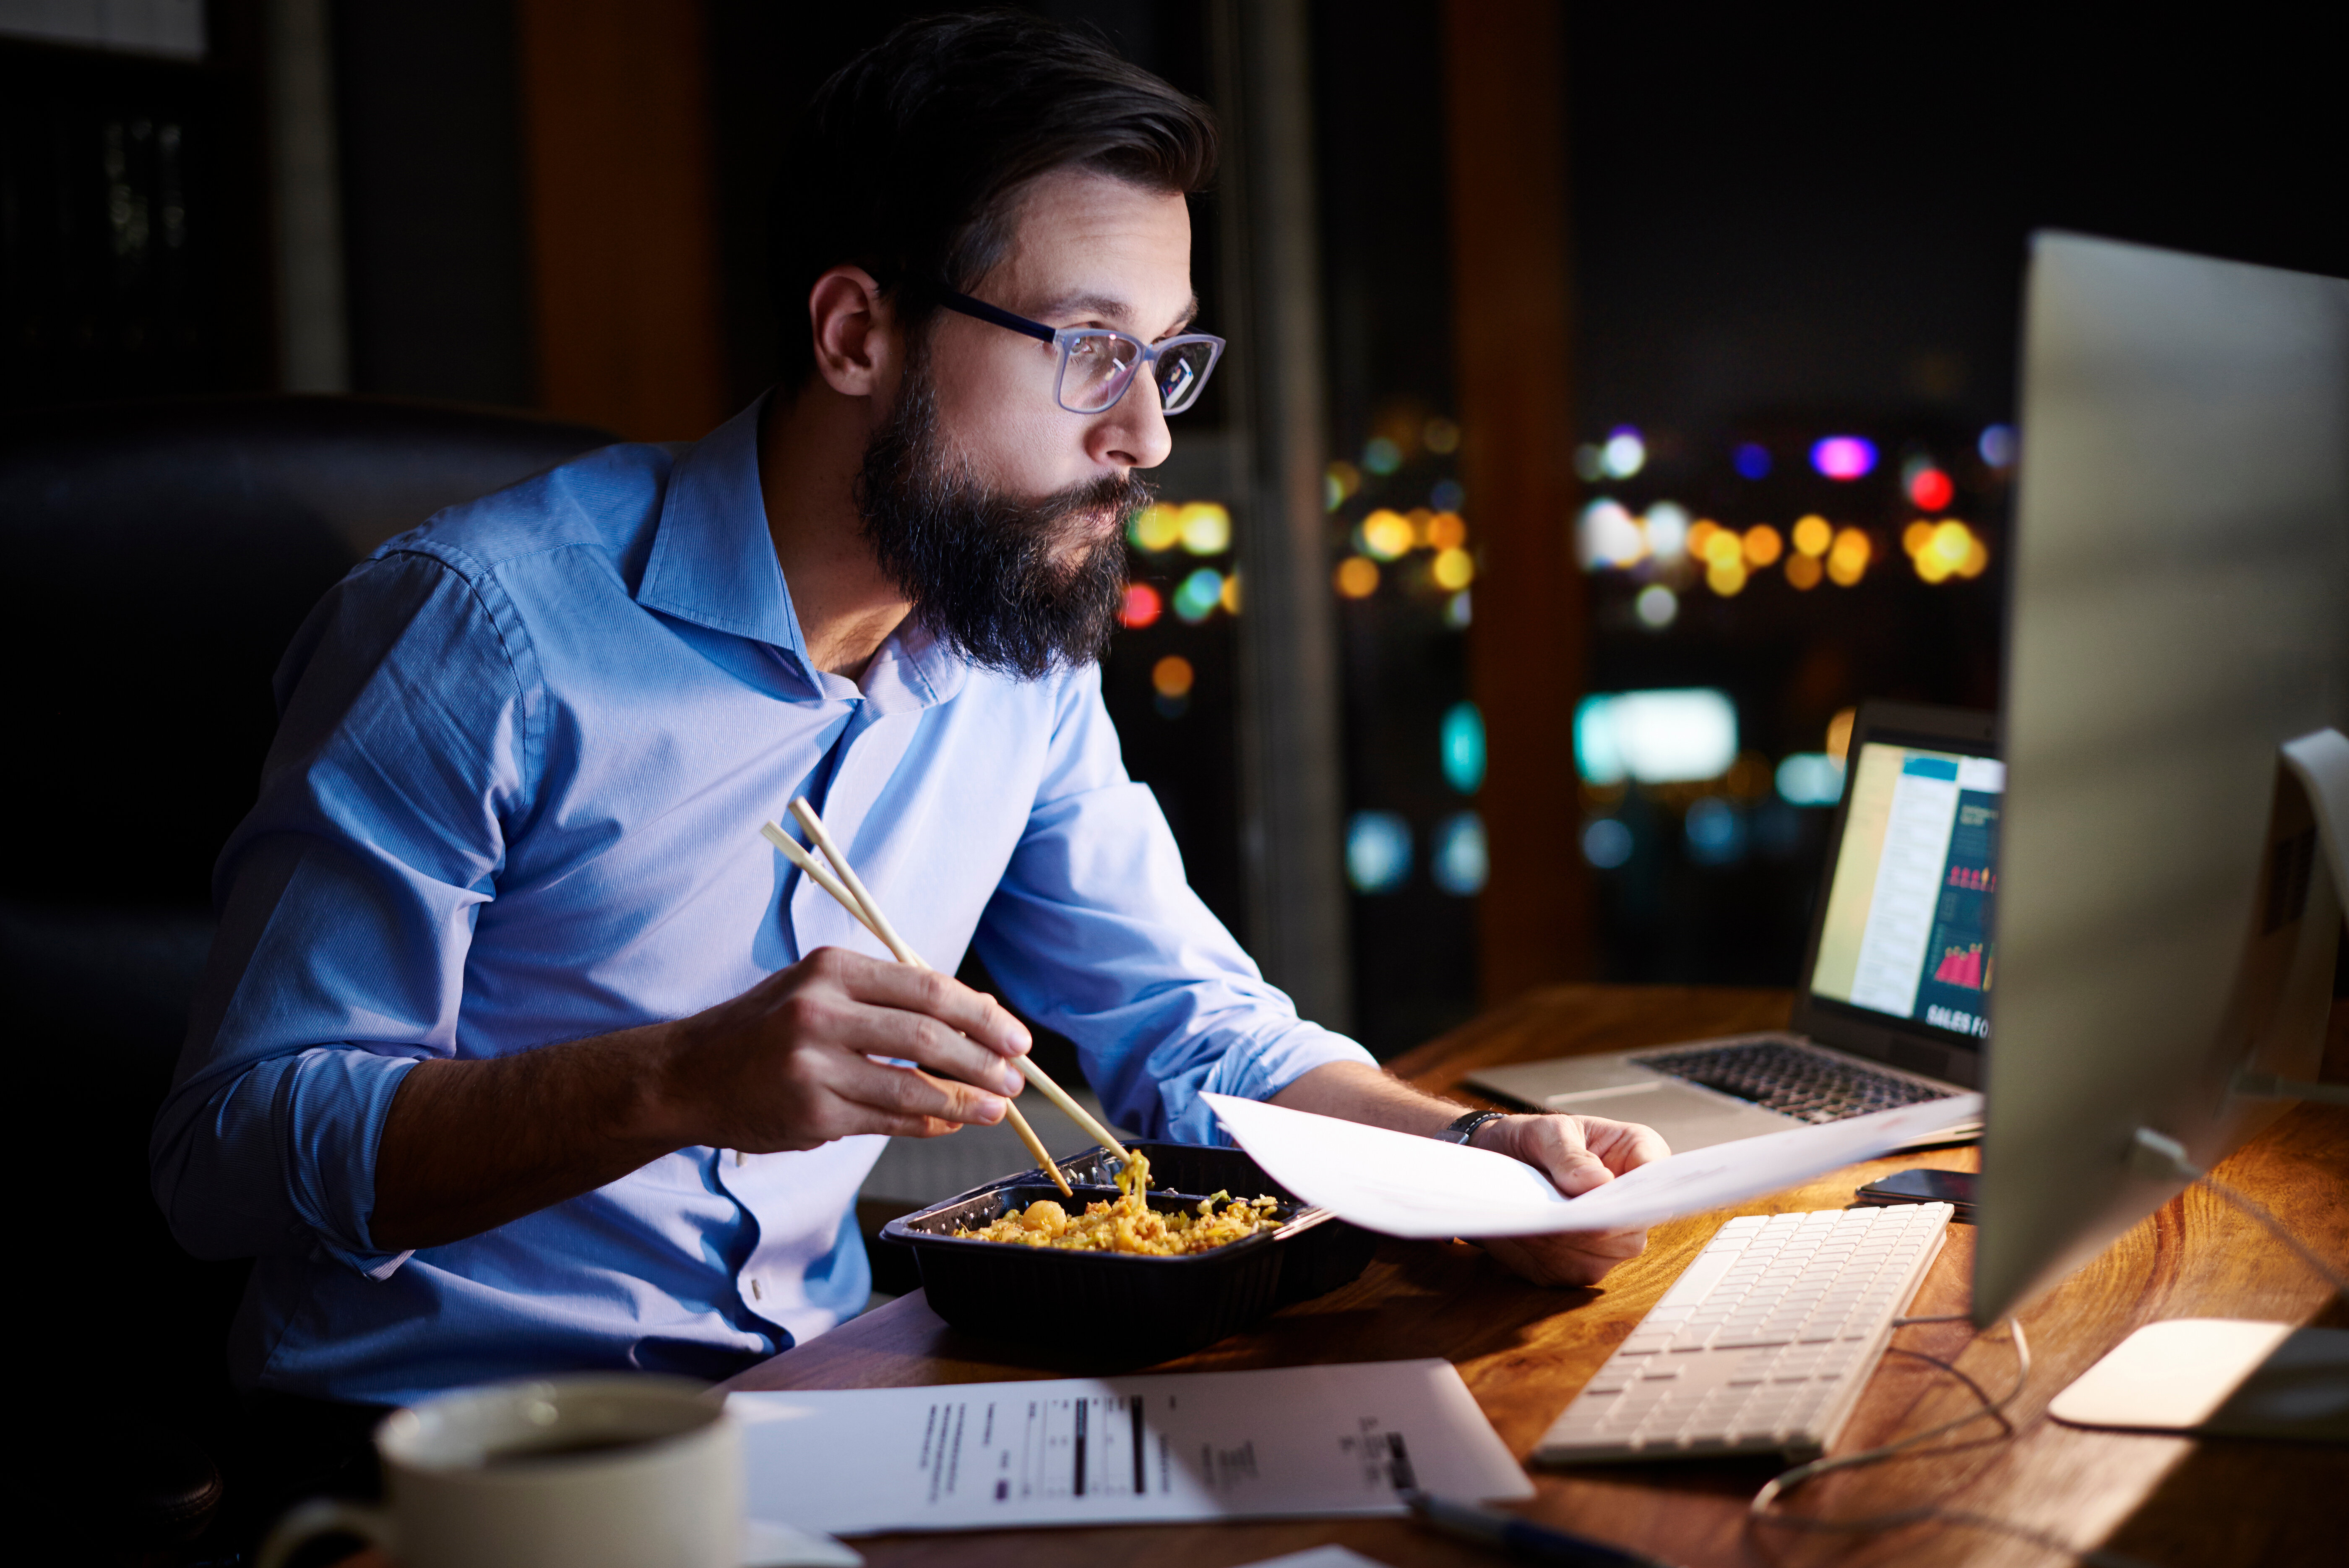 a man eating at his computer desk at night